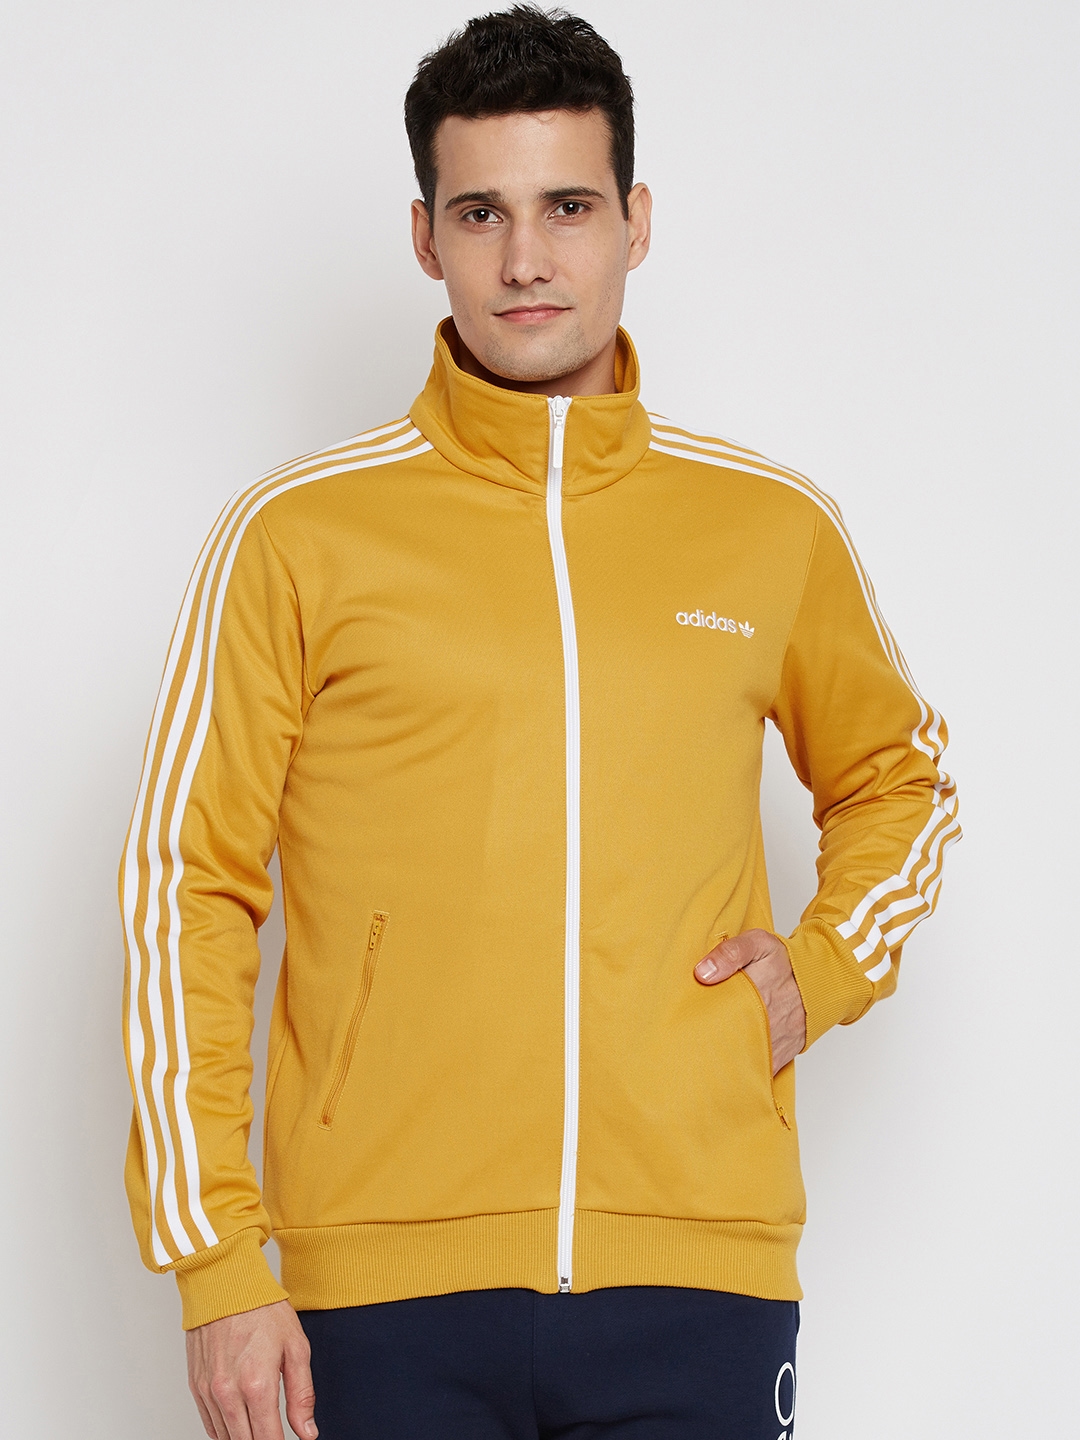 werk Voorzichtig Onhandig Buy ADIDAS Originals Men Mustard Yellow Beckenbauer Track Jacket - Jackets  for Men 2085725 | Myntra